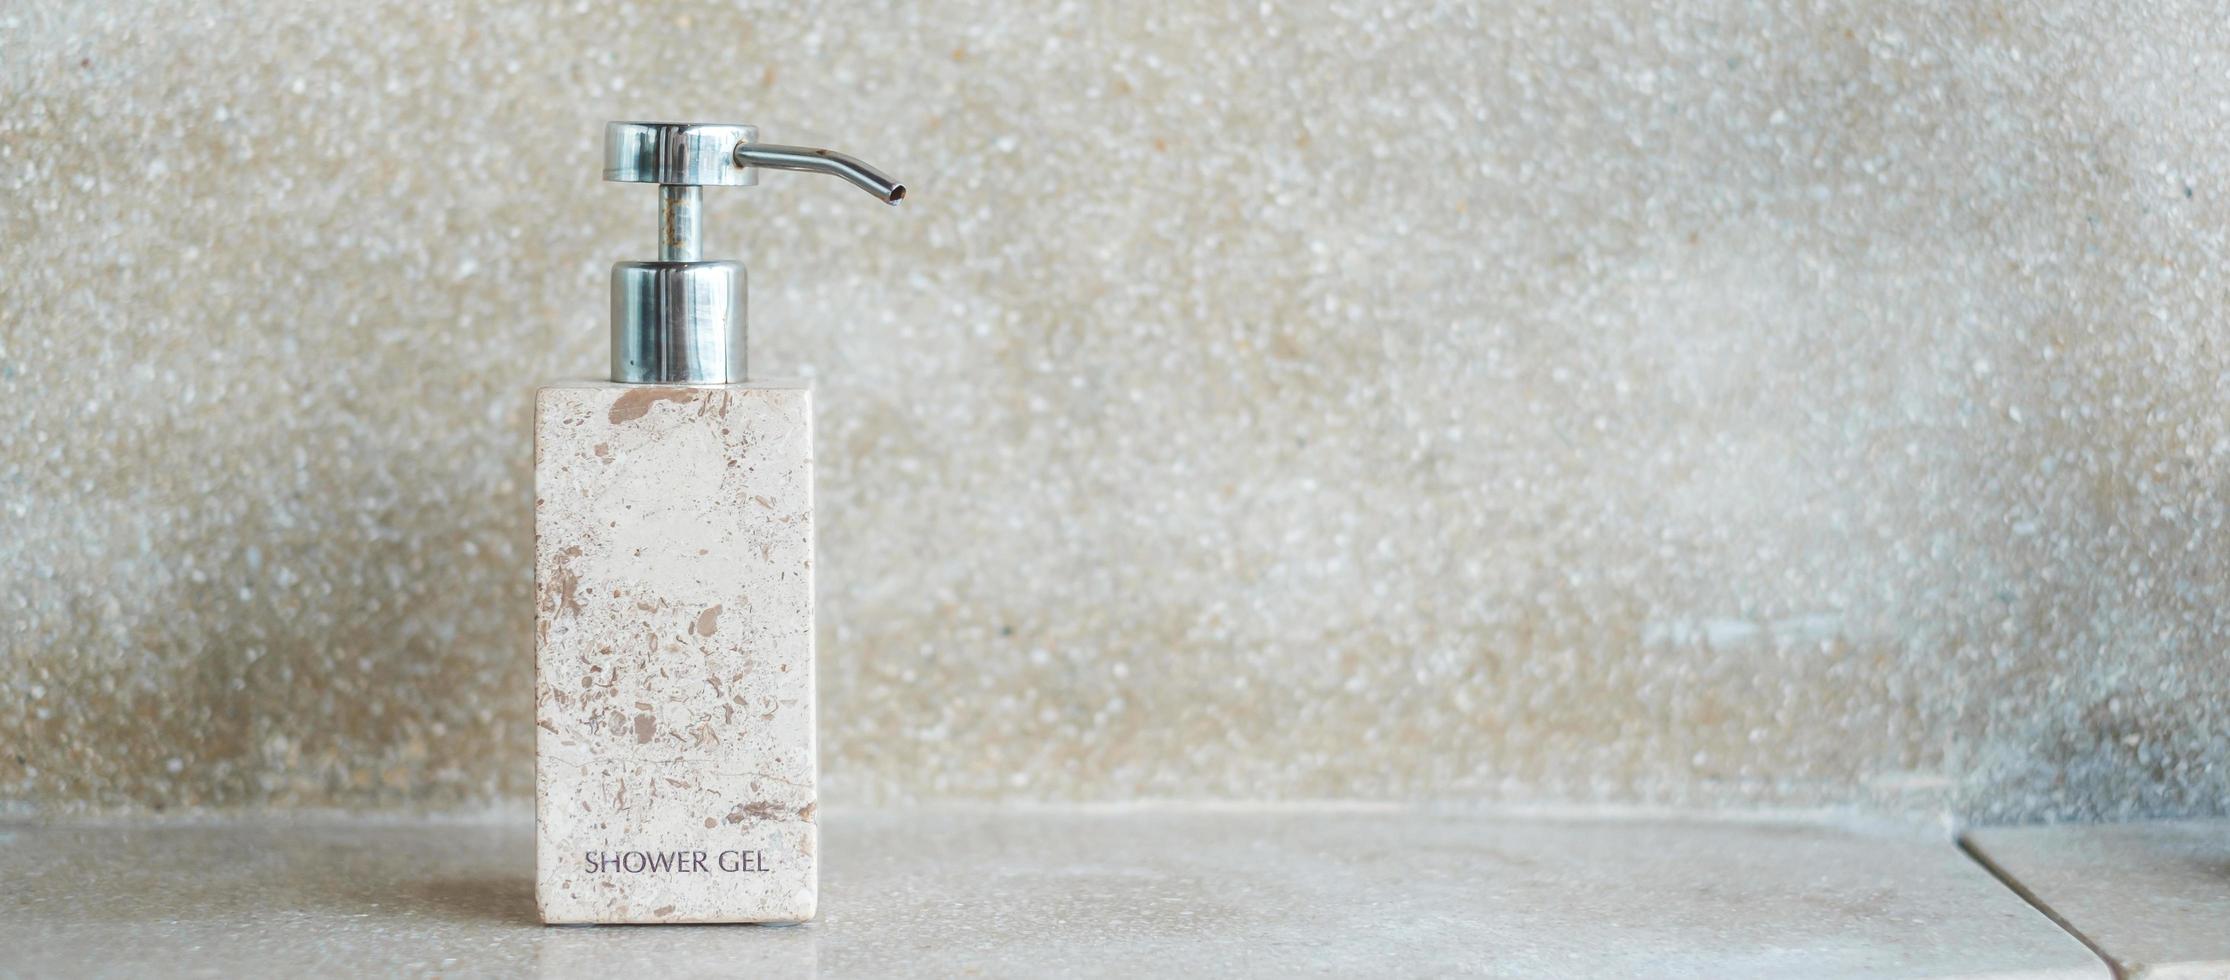 toiletartikelen flessen in de badkamer in luxehotel of modern huis. body showergel in keramiek met muurachtergrond foto